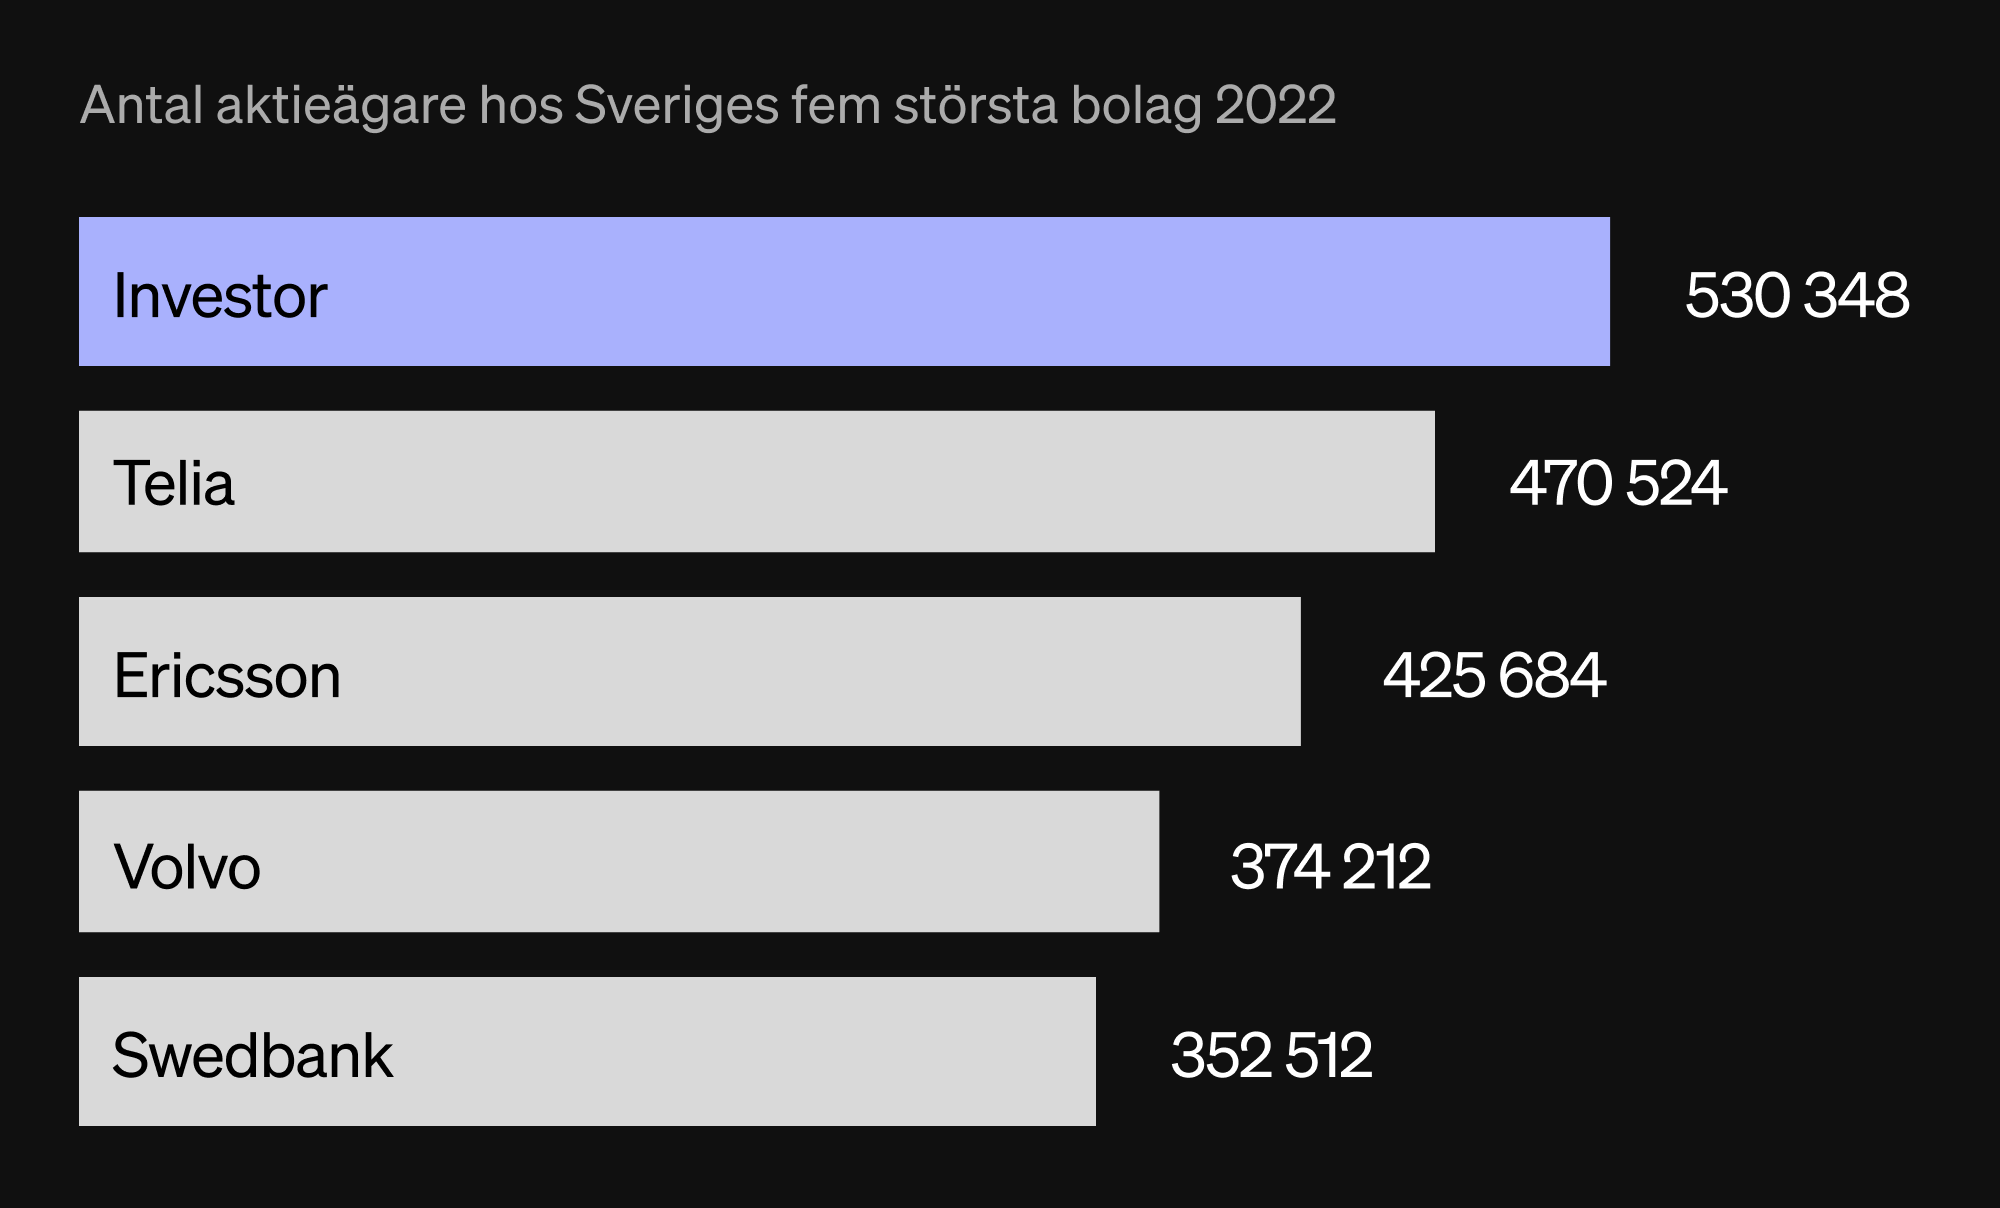 Antal aktieägare hos Sveriges fem största bolag